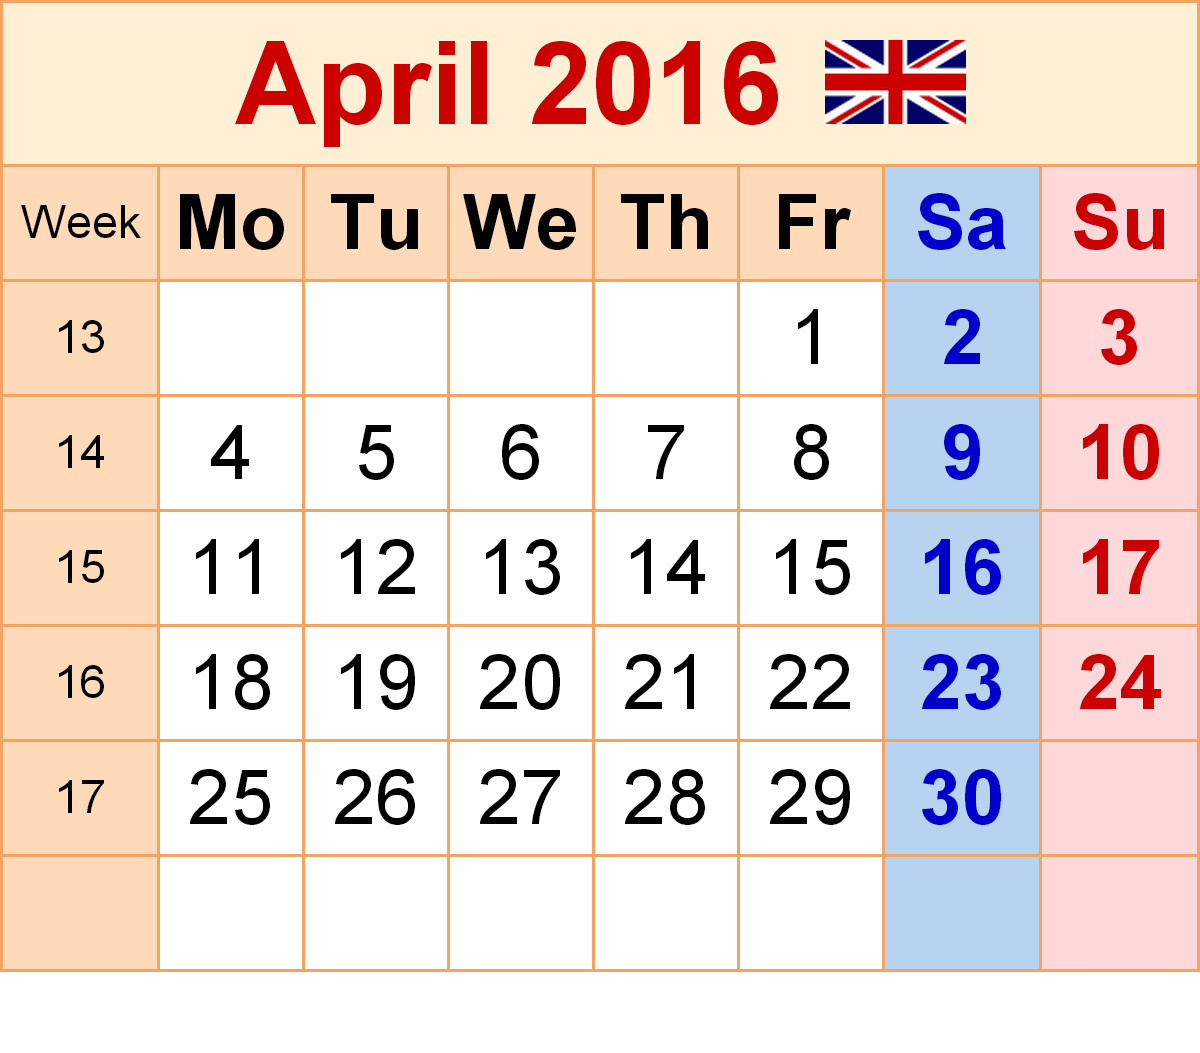 April 2016 Calendar with Holidays[USA, UK, Canada]